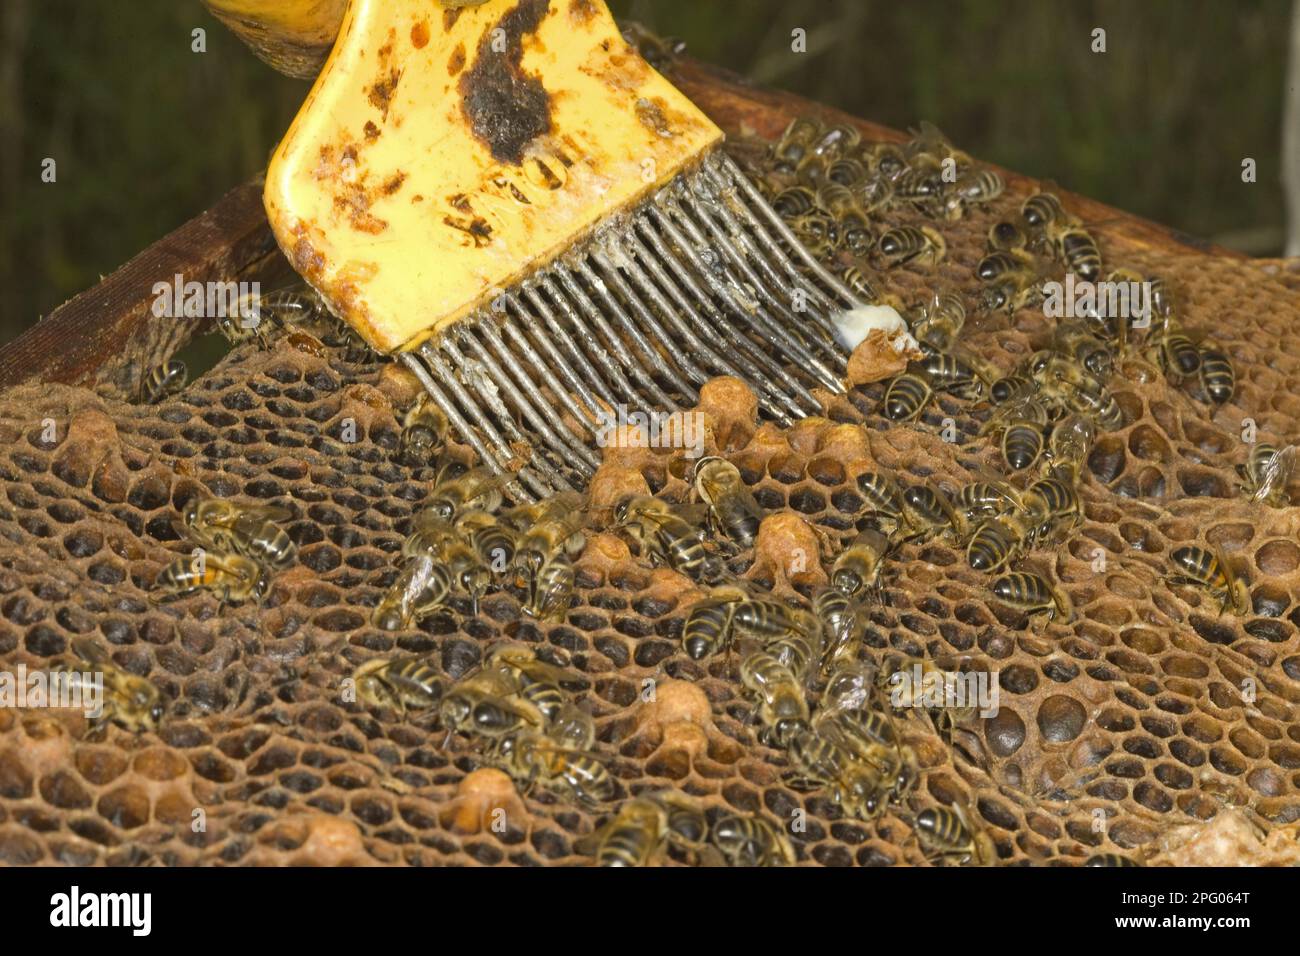 Bienenzucht, Imker entfernt unerwünschte Zellen aus dem Rahmen, Norfolk, England, Vereinigtes Königreich Stockfoto